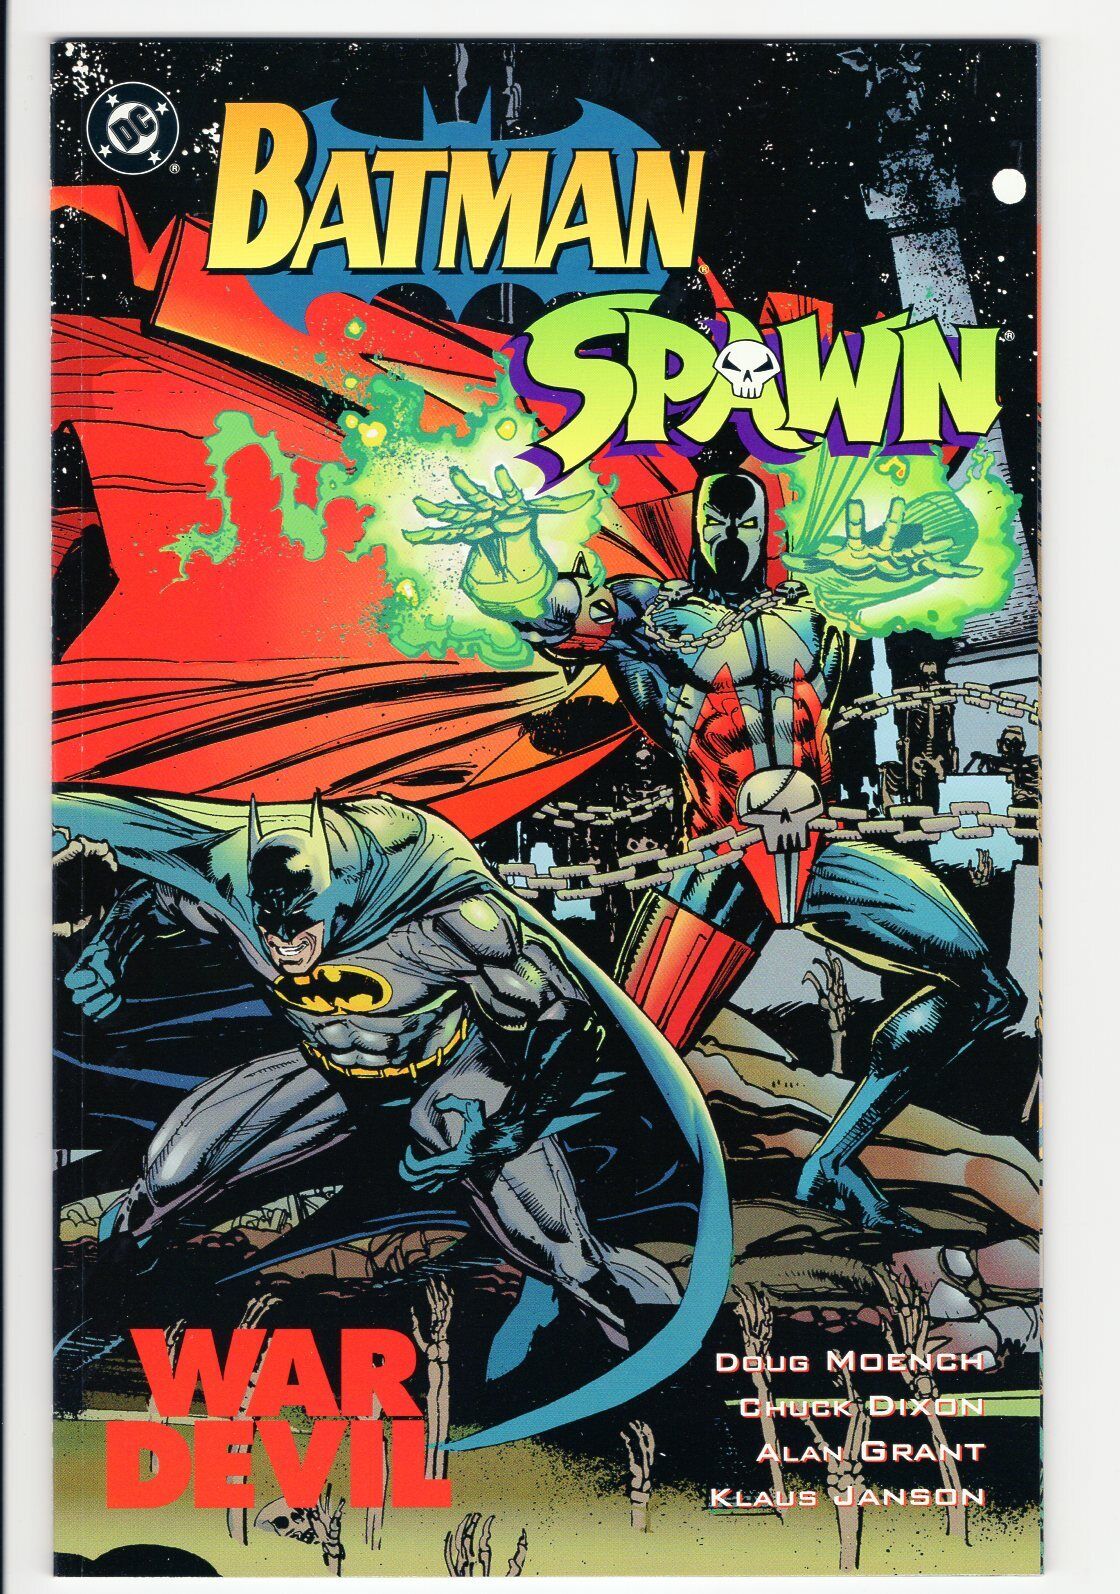 Batman Spawn War Devil tpb  DC Comics CBX1F